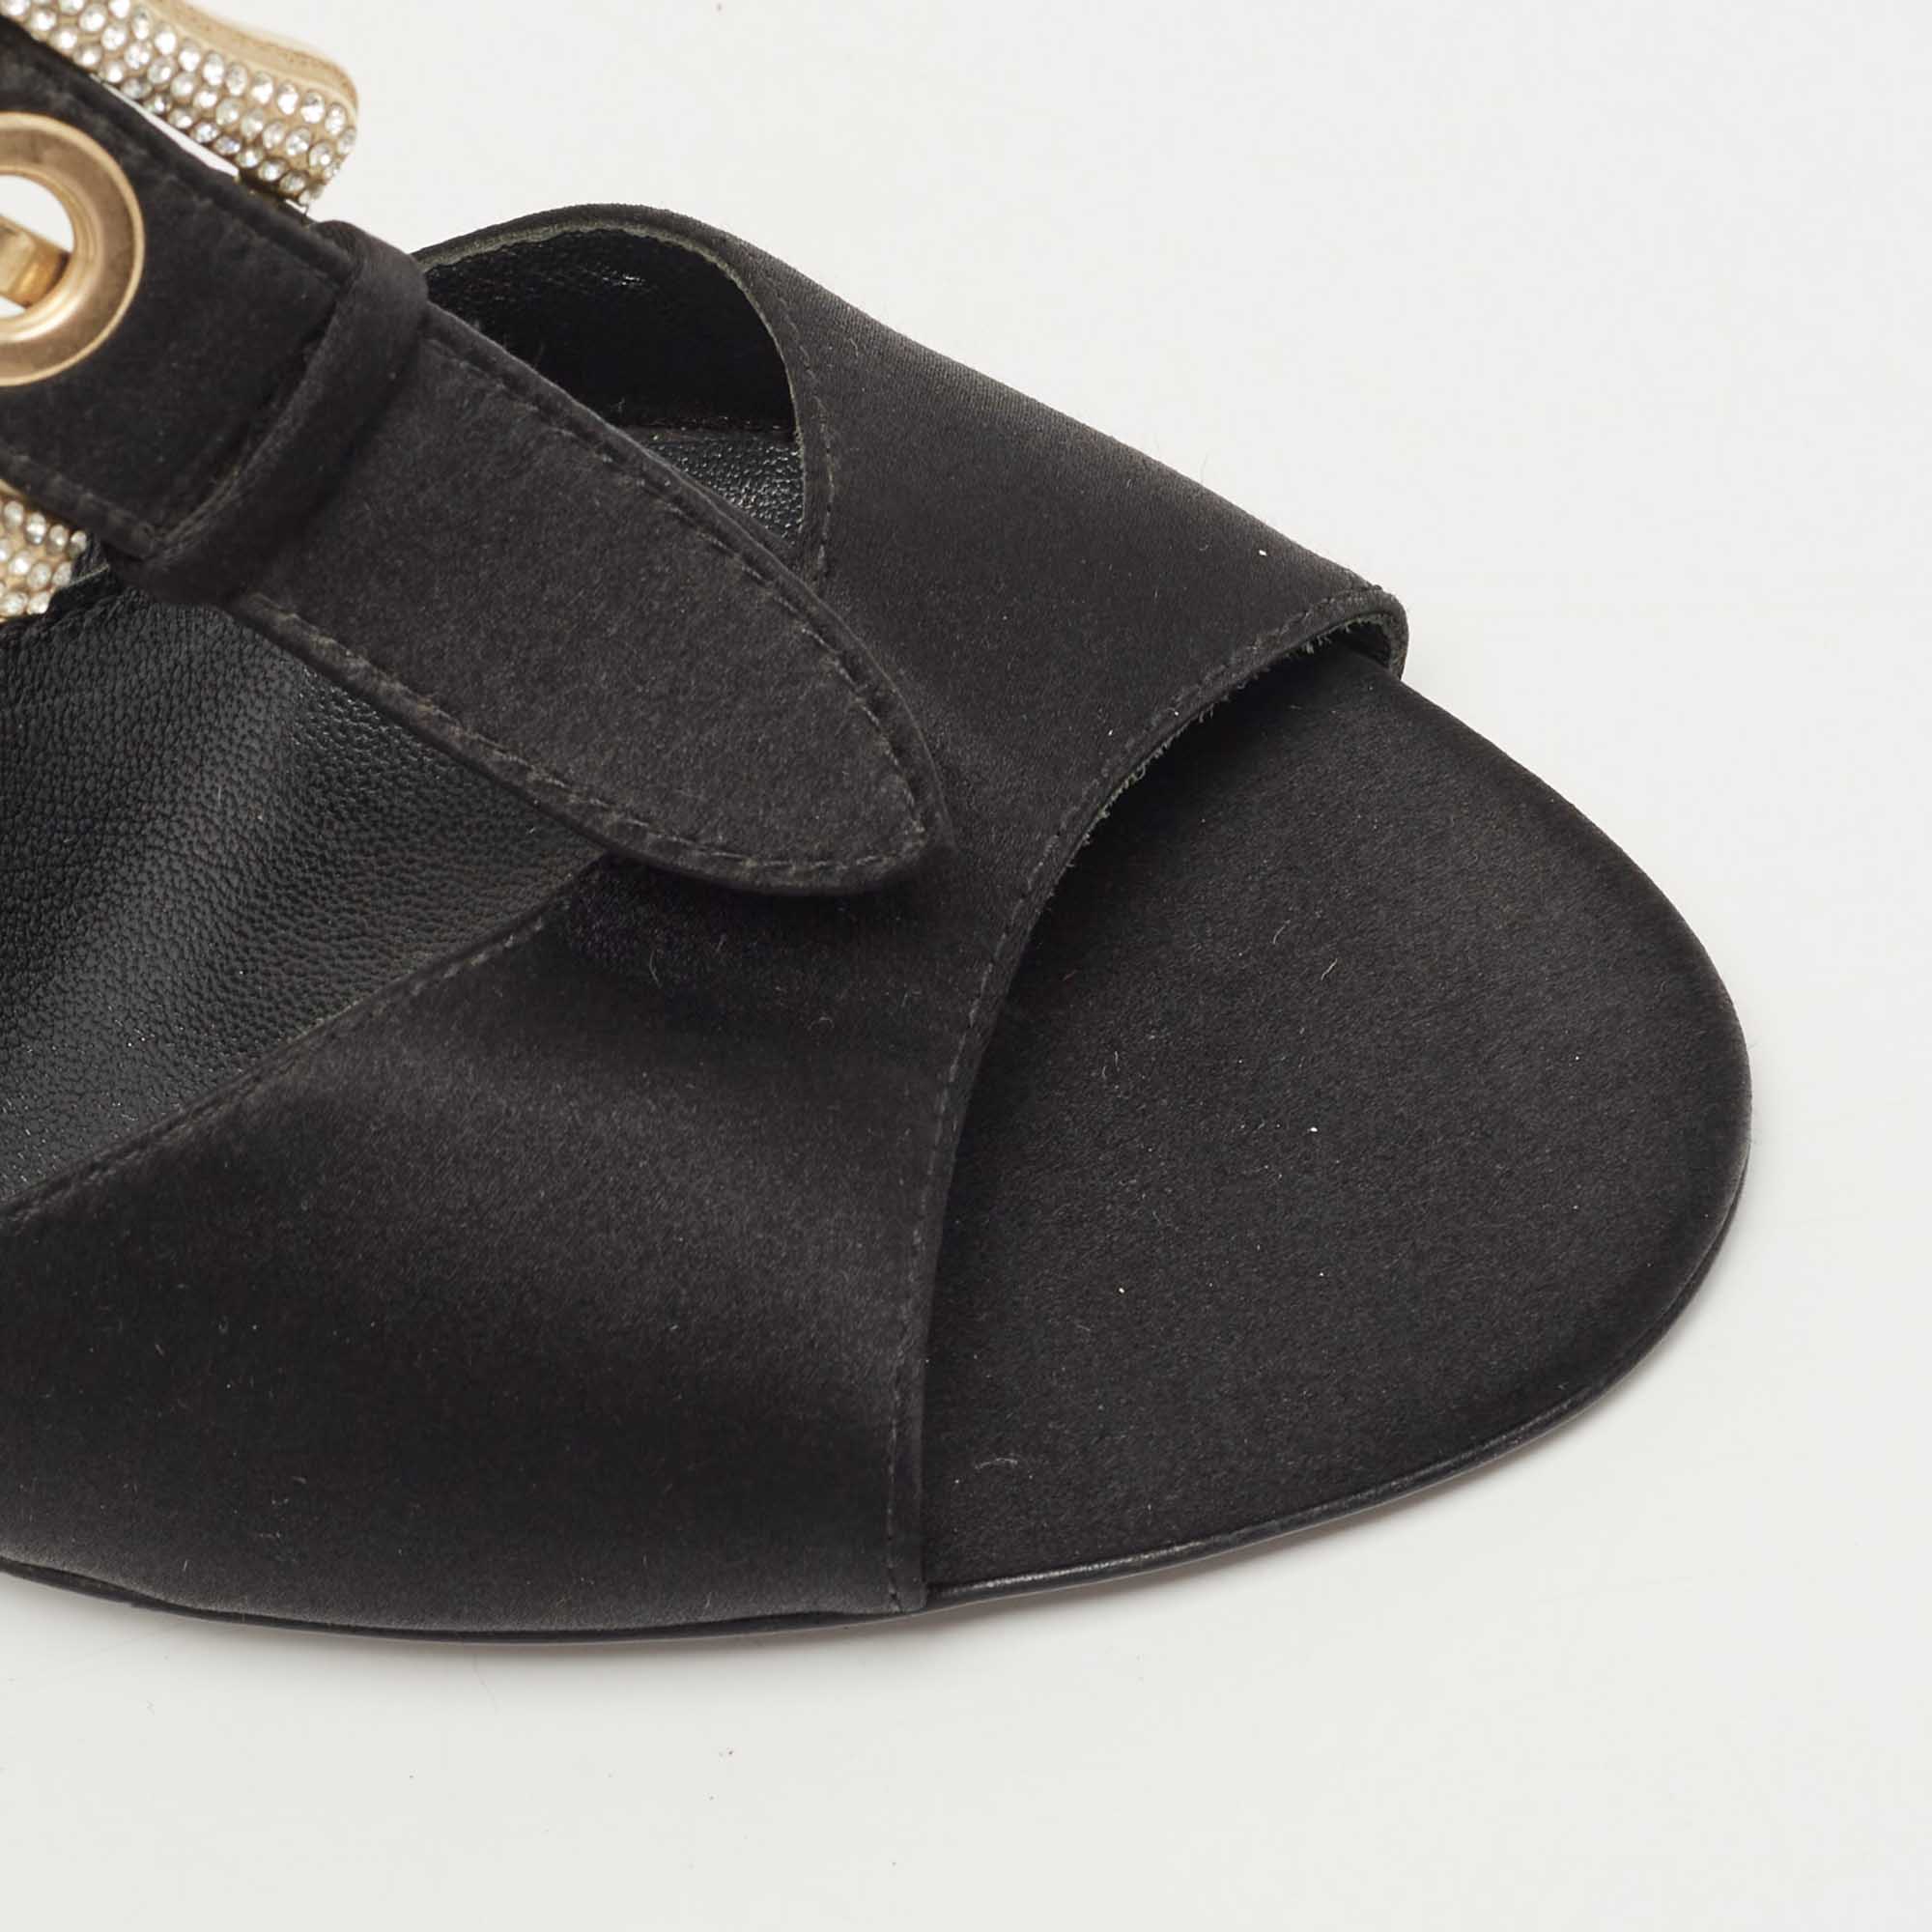 Fendi Black Satin Crystal Embellished Buckle T-Strap Sandals Size 39